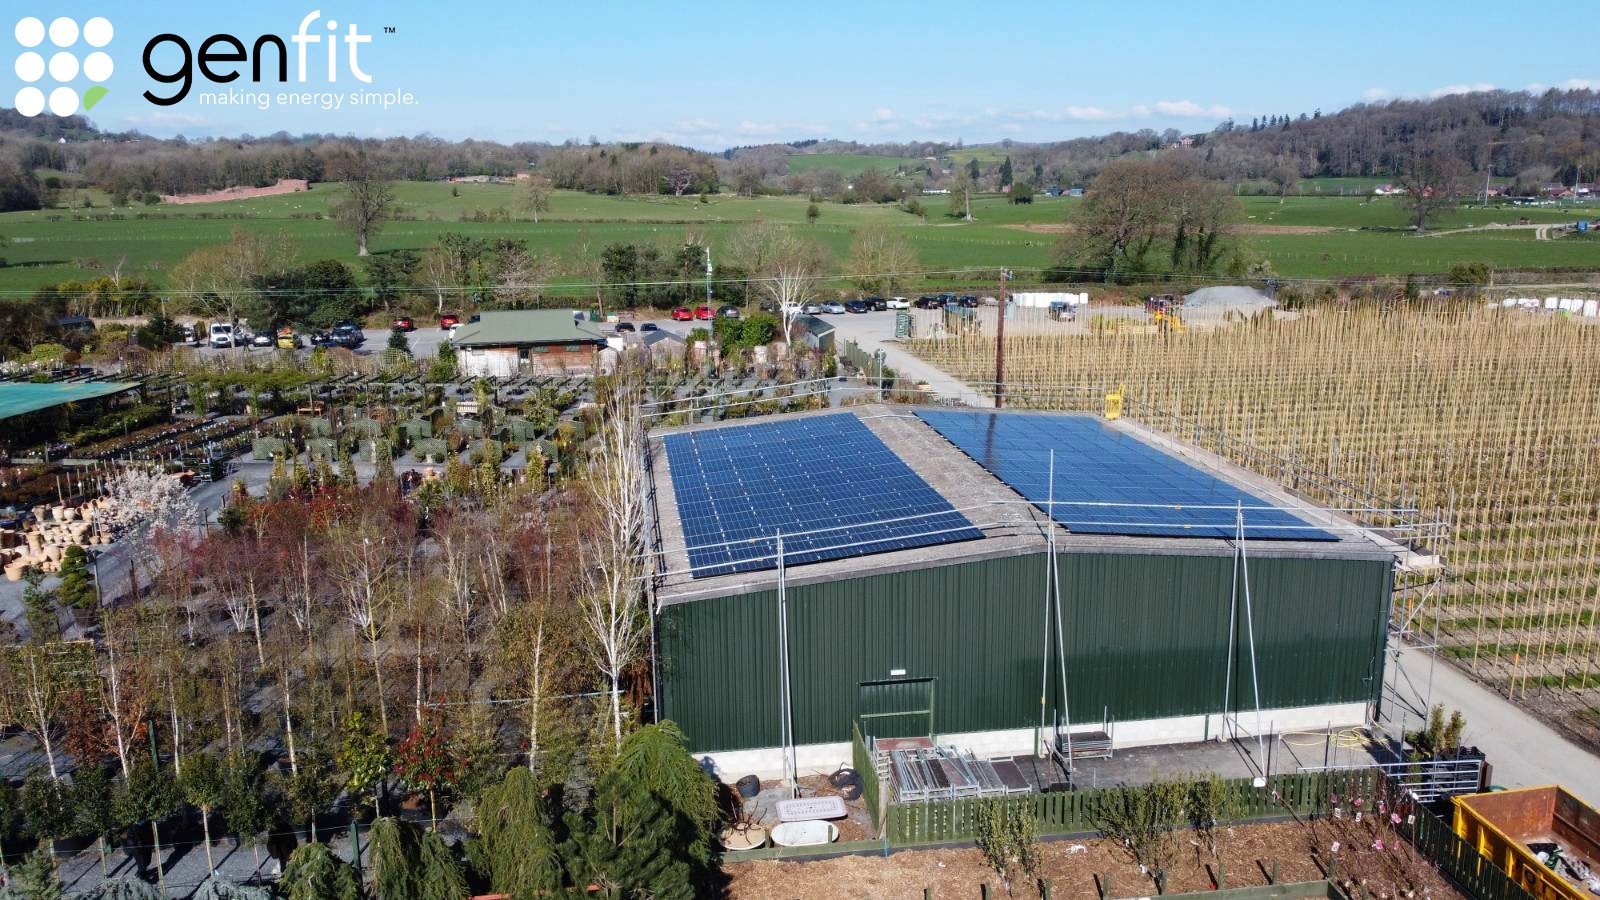 Solar panels installed at Derwen Garden Centre